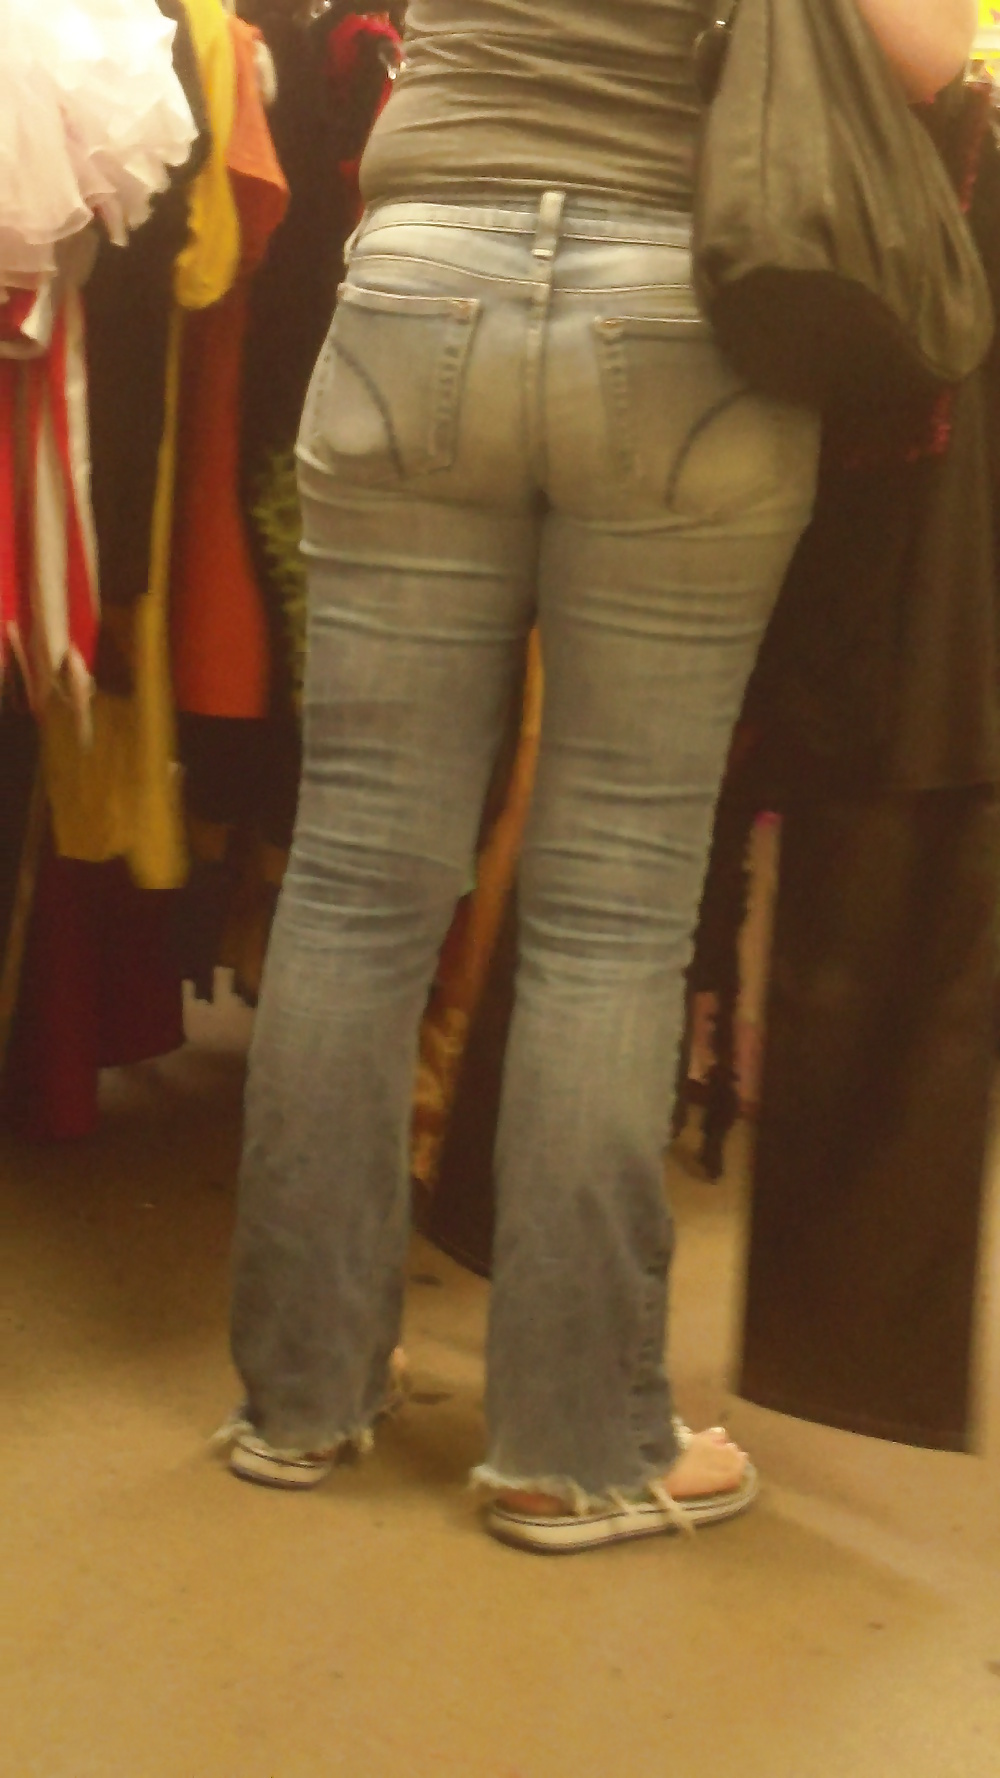 Popular teen girls ass & butt in jeans Part 6 #32009959